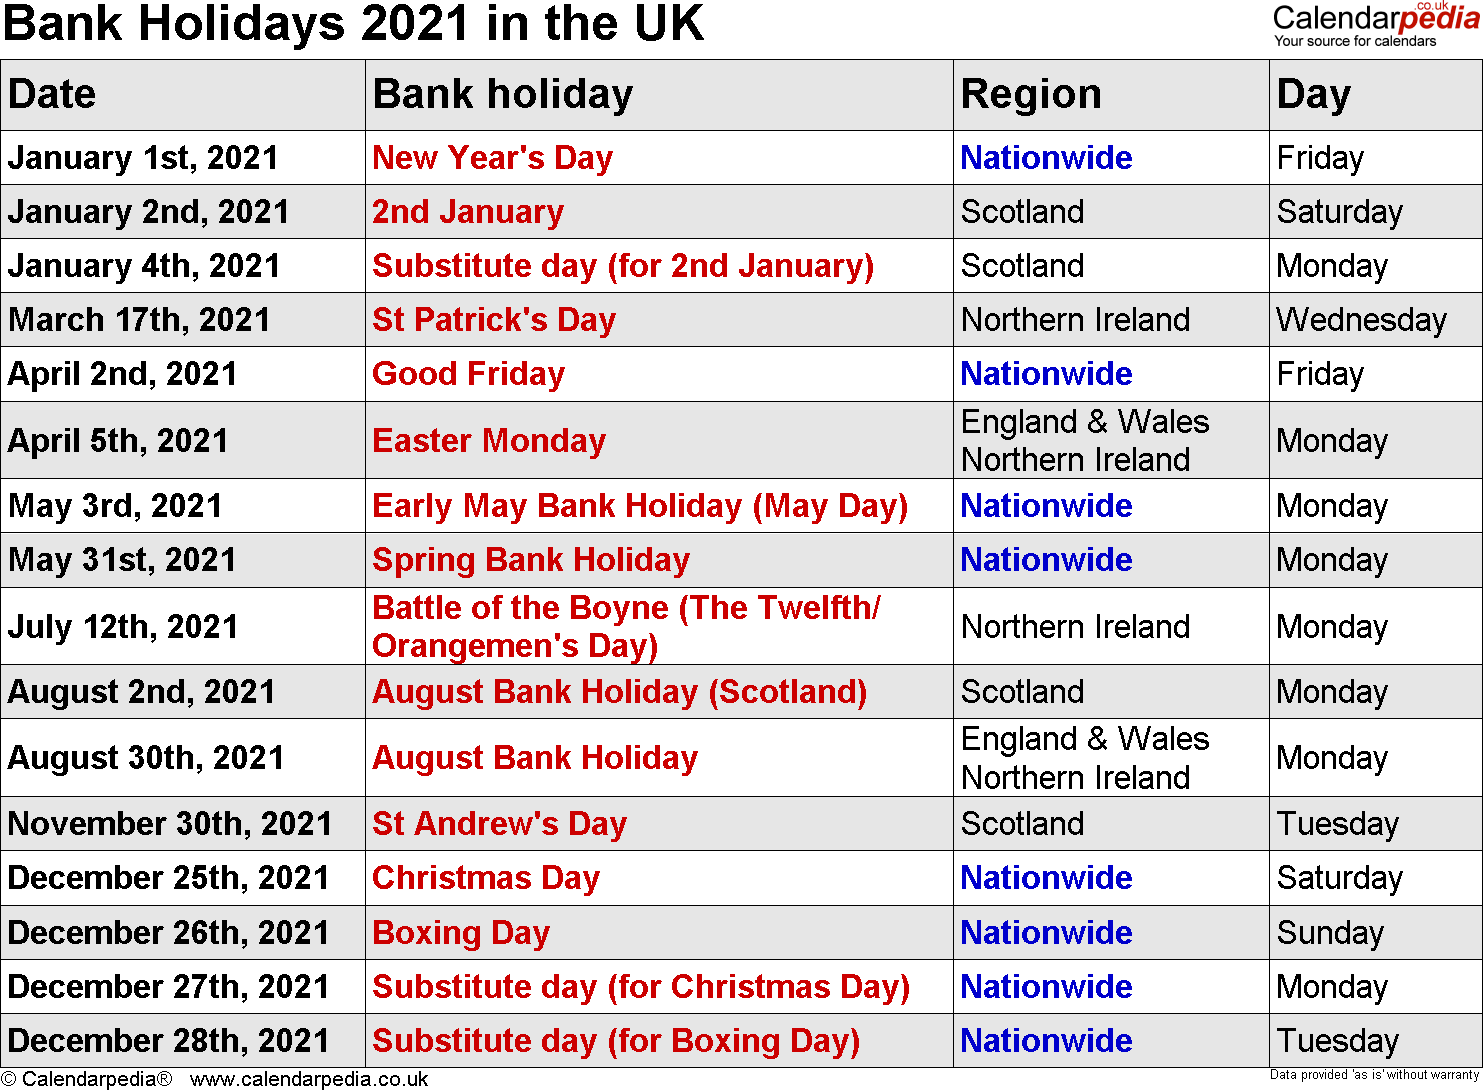 Scottish Bank Holidays